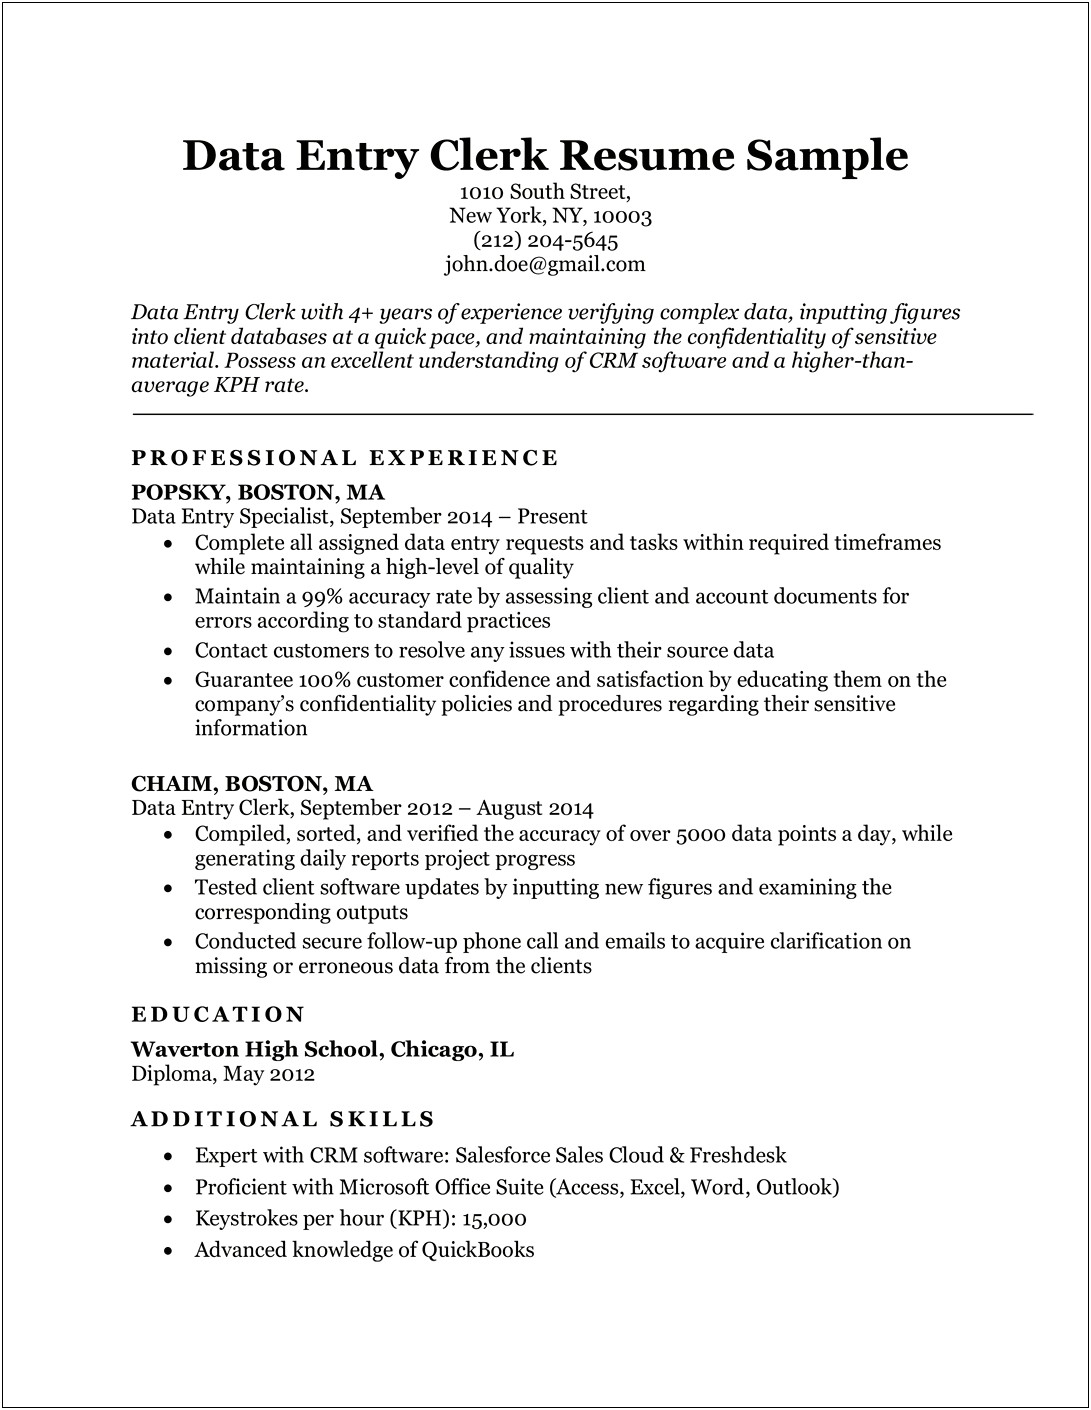 Free Sample Resume For Data Entry